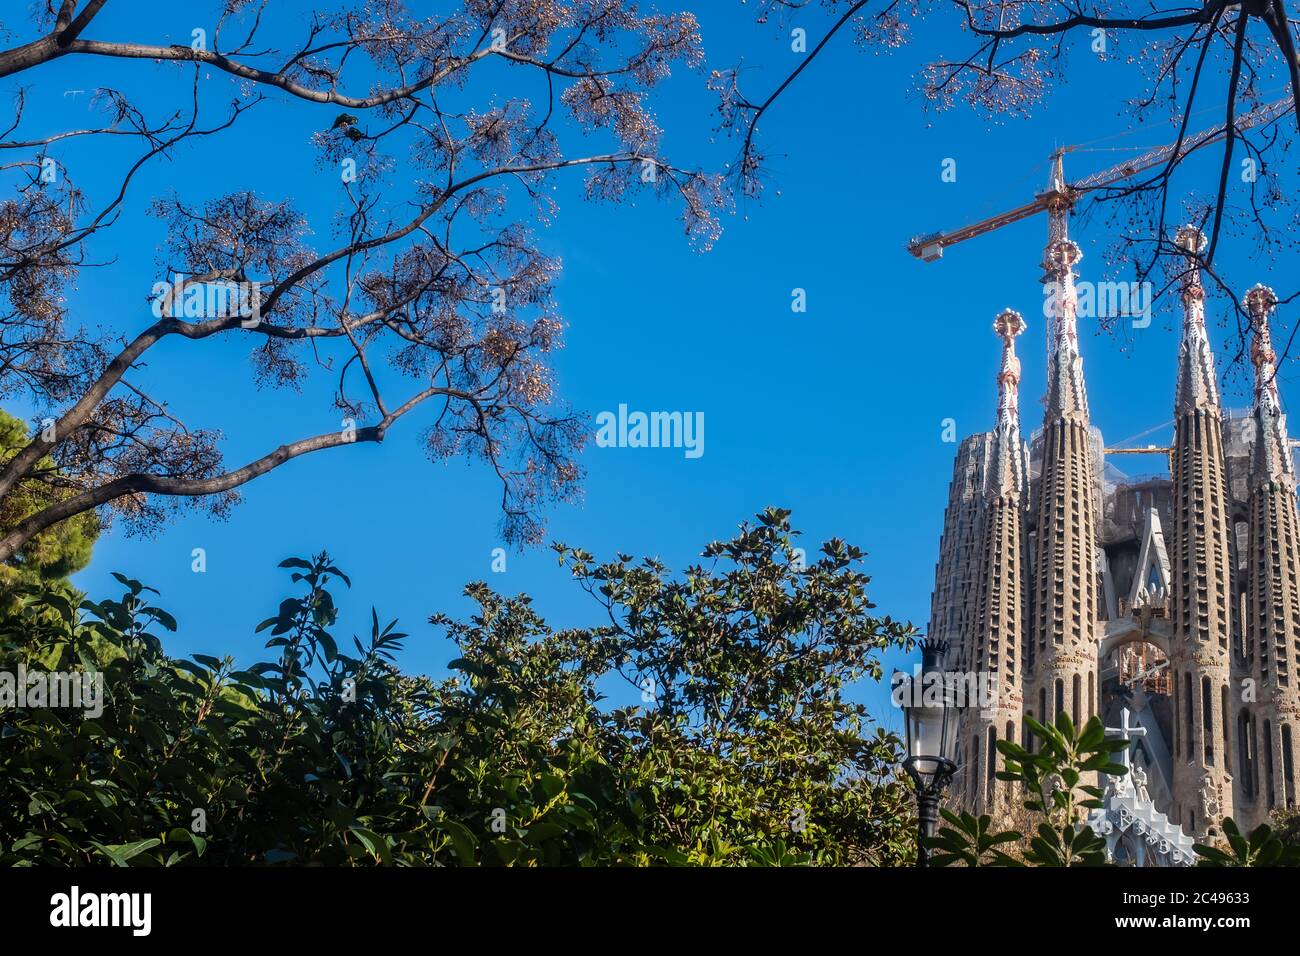 Barcelona (Spanien), La Sagrada Familia: Eine unerwartete Vision der Kathedrale, durch eine natürliche Umgebung beobachtet, weg von den Massen von Touristen. Stockfoto